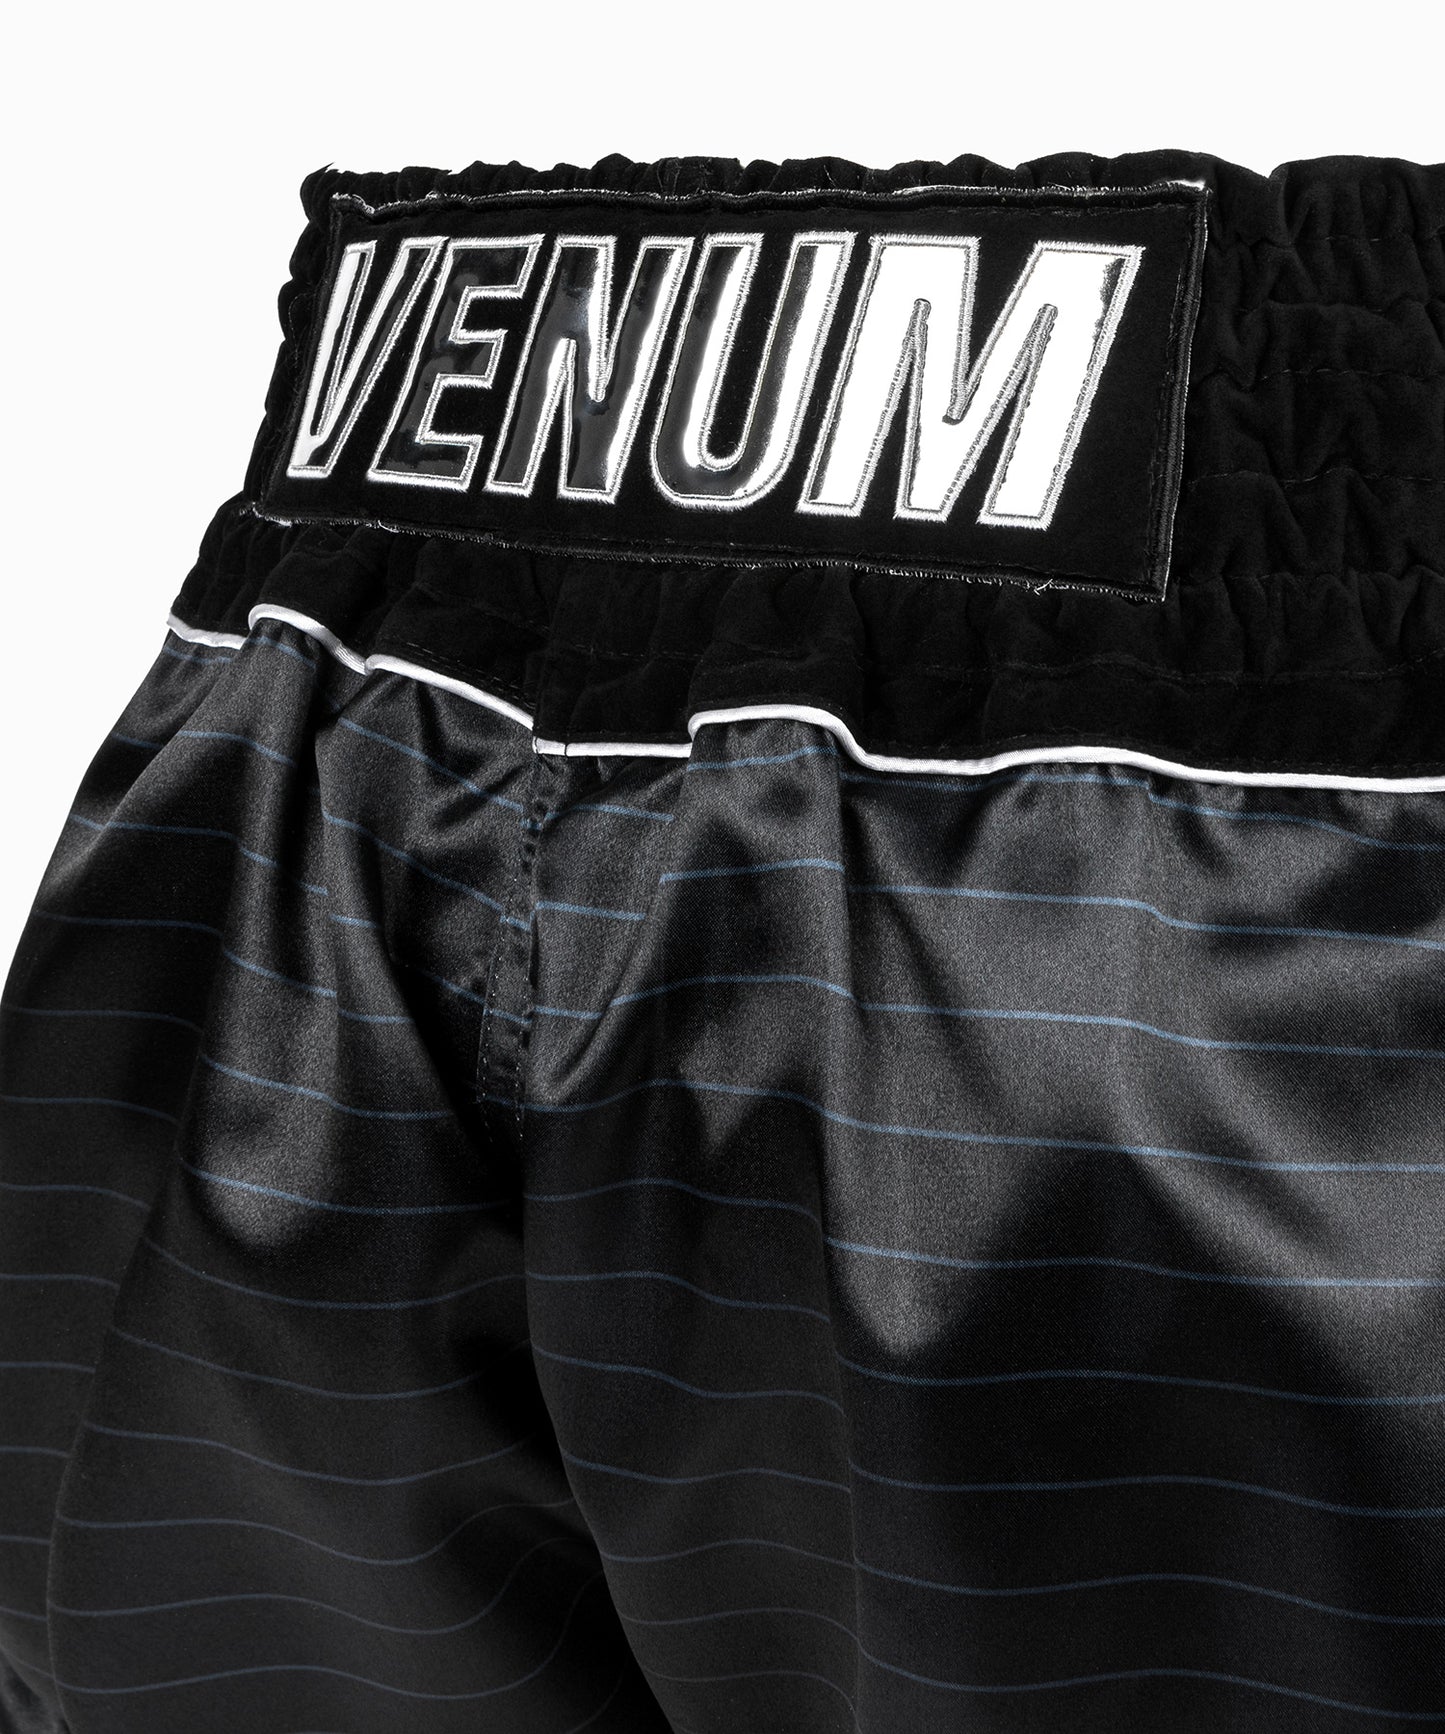 Venum Attack Muay Thaï Short - Black/Silver